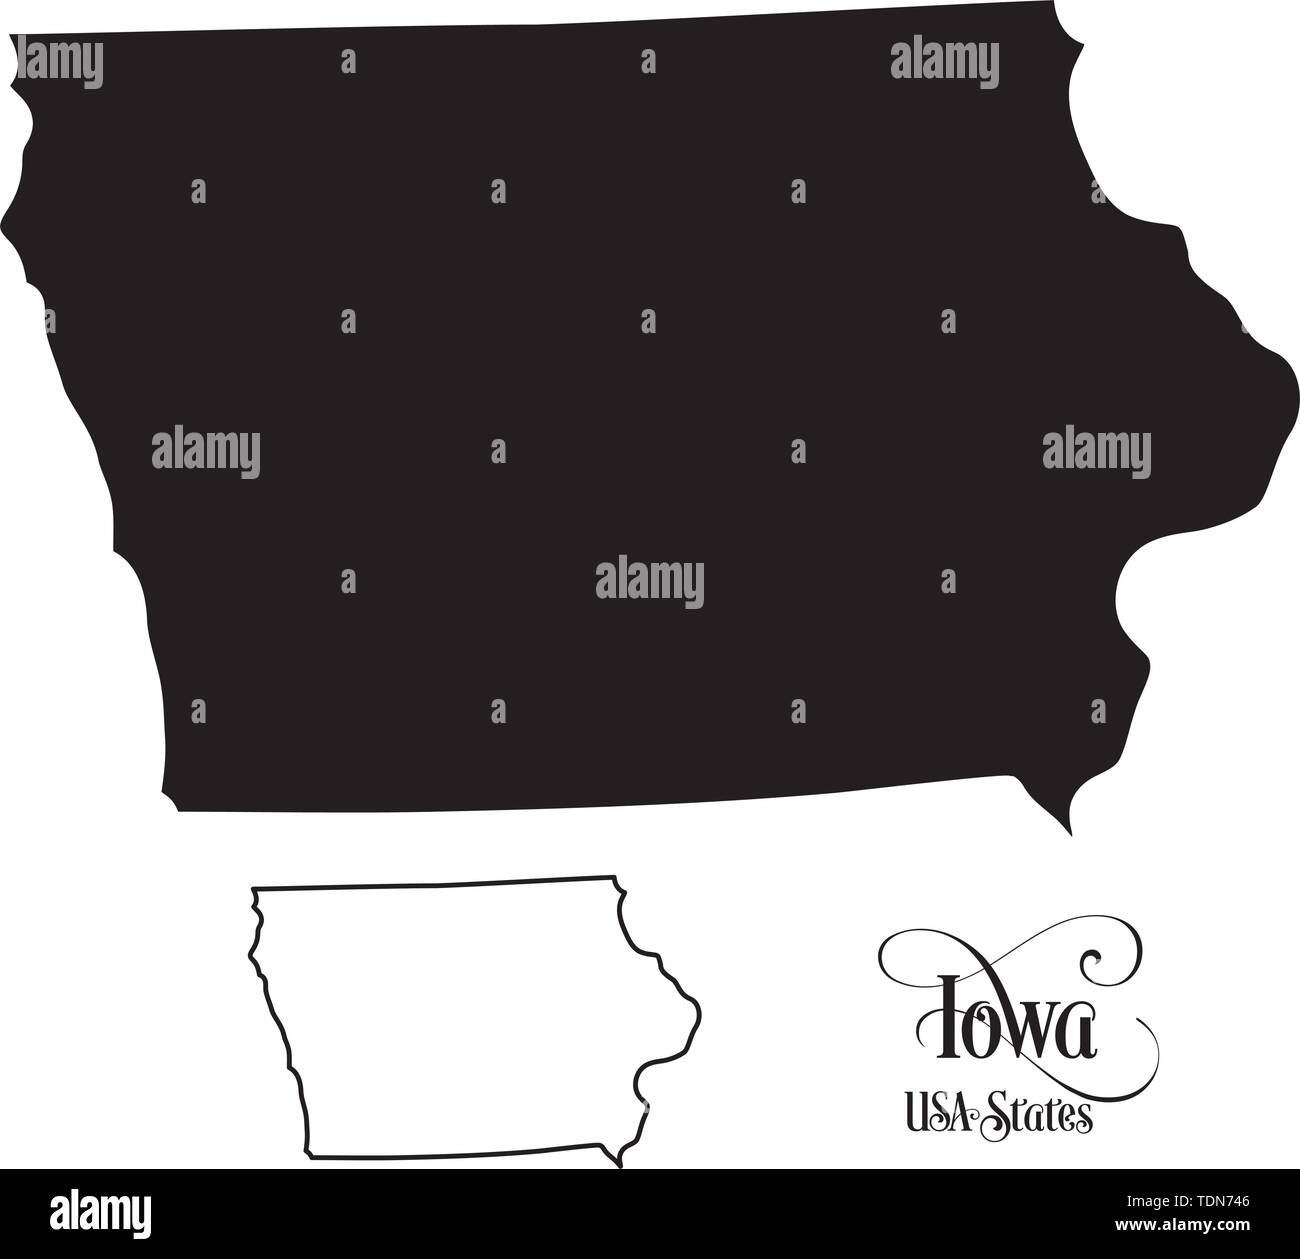 Karte der Vereinigten Staaten von Amerika (USA) Zustand von Iowa - Abbildung auf weißem Hintergrund. Stock Vektor